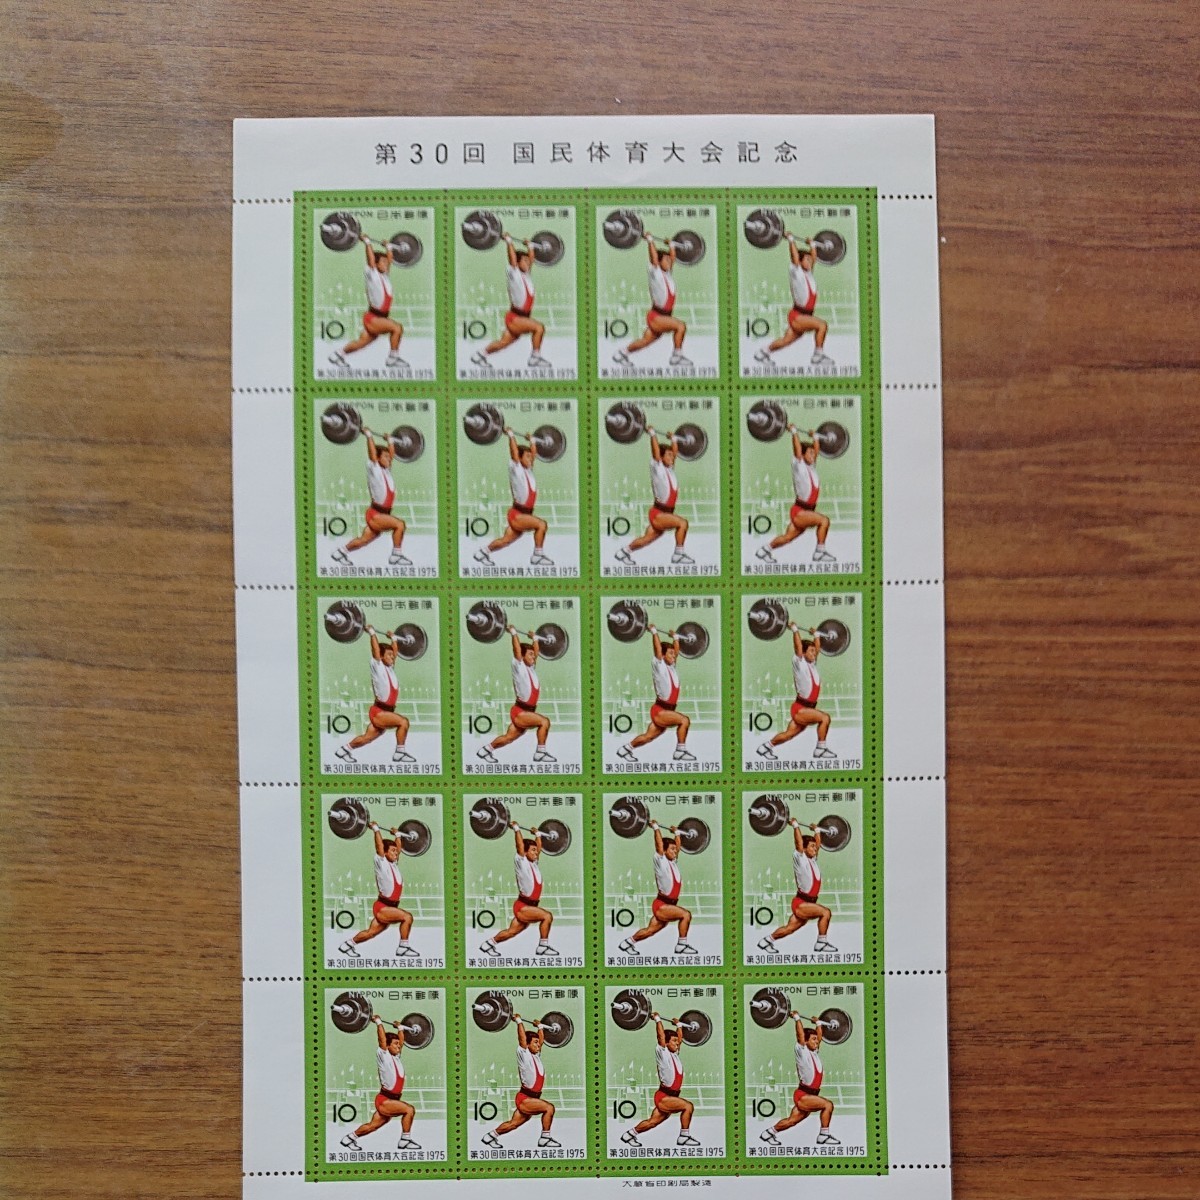 記念切手シート 5円、10円、20円の3種類